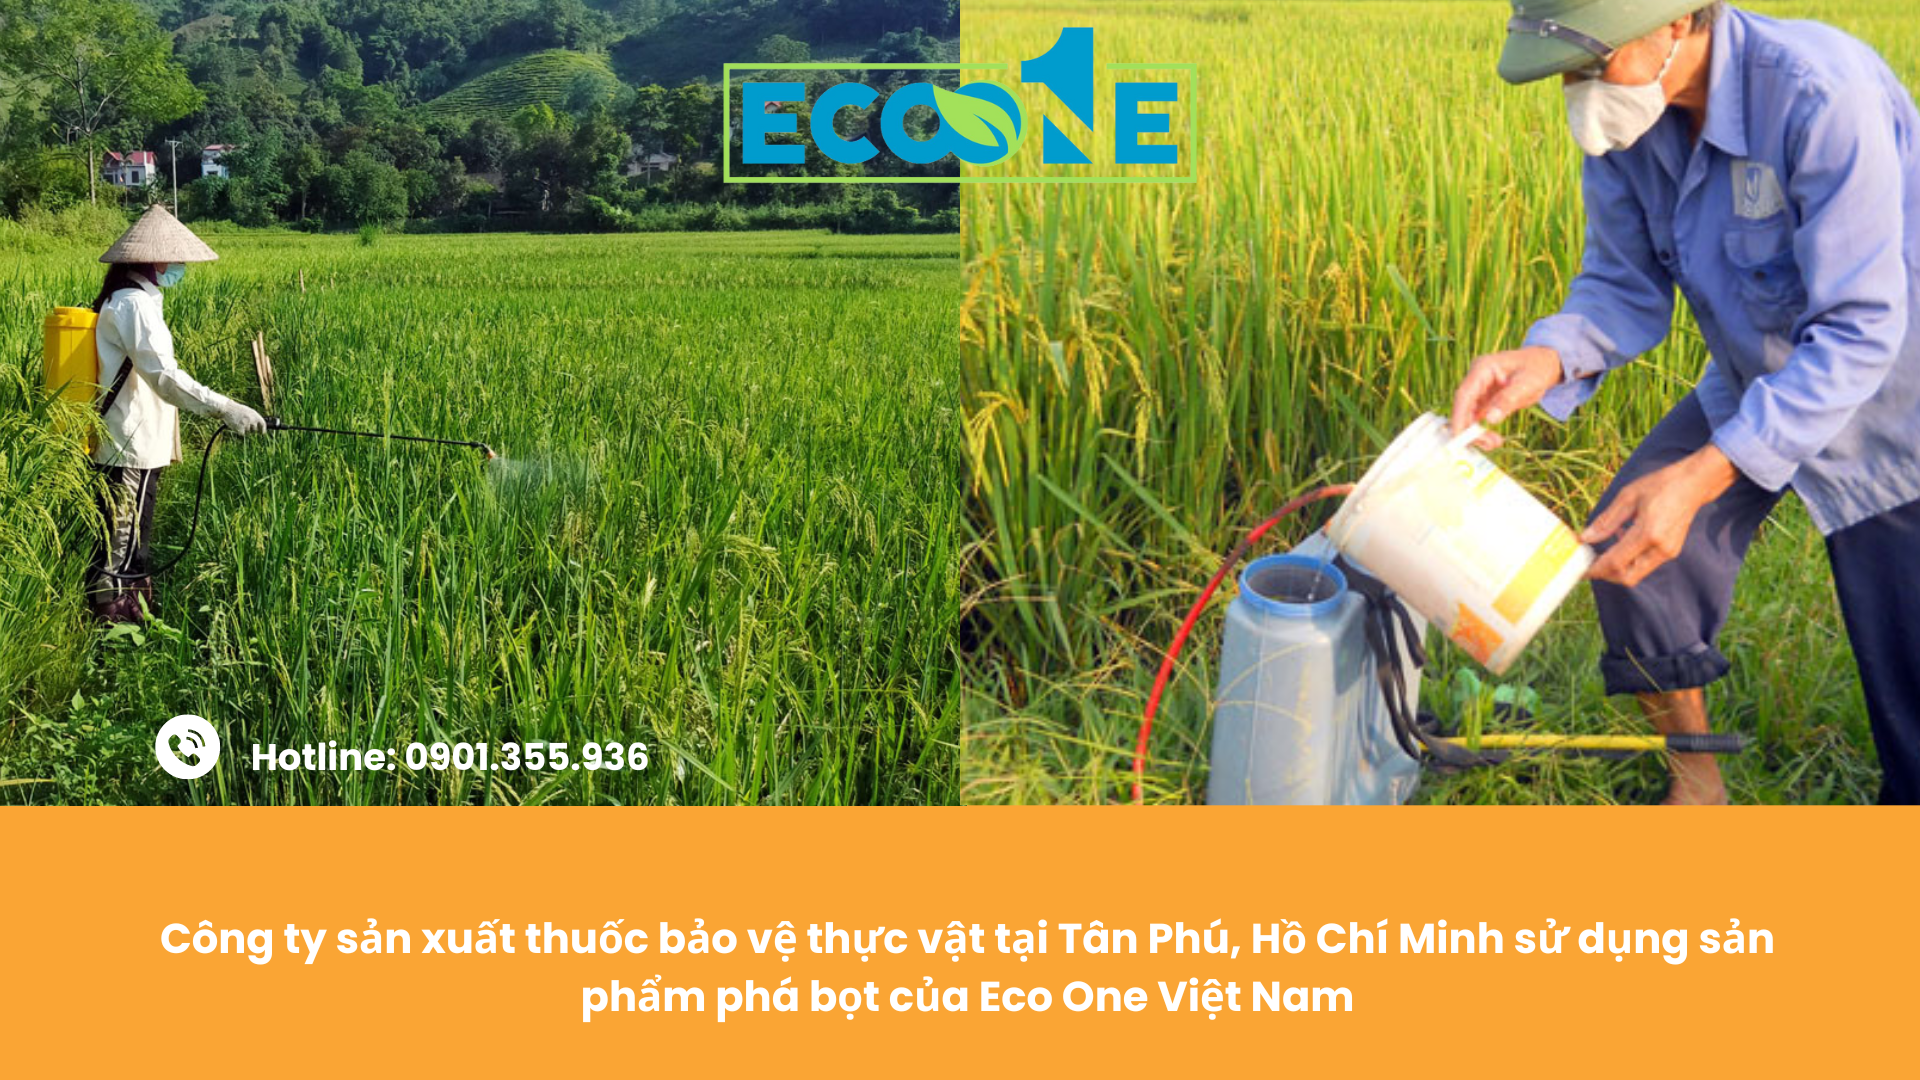 Công ty sản xuất thuốc bảo vệ thực vật tại Tân Phú, Hồ Chí Minh sử dụng sản phẩm phá bọt của Eco One Việt Nam